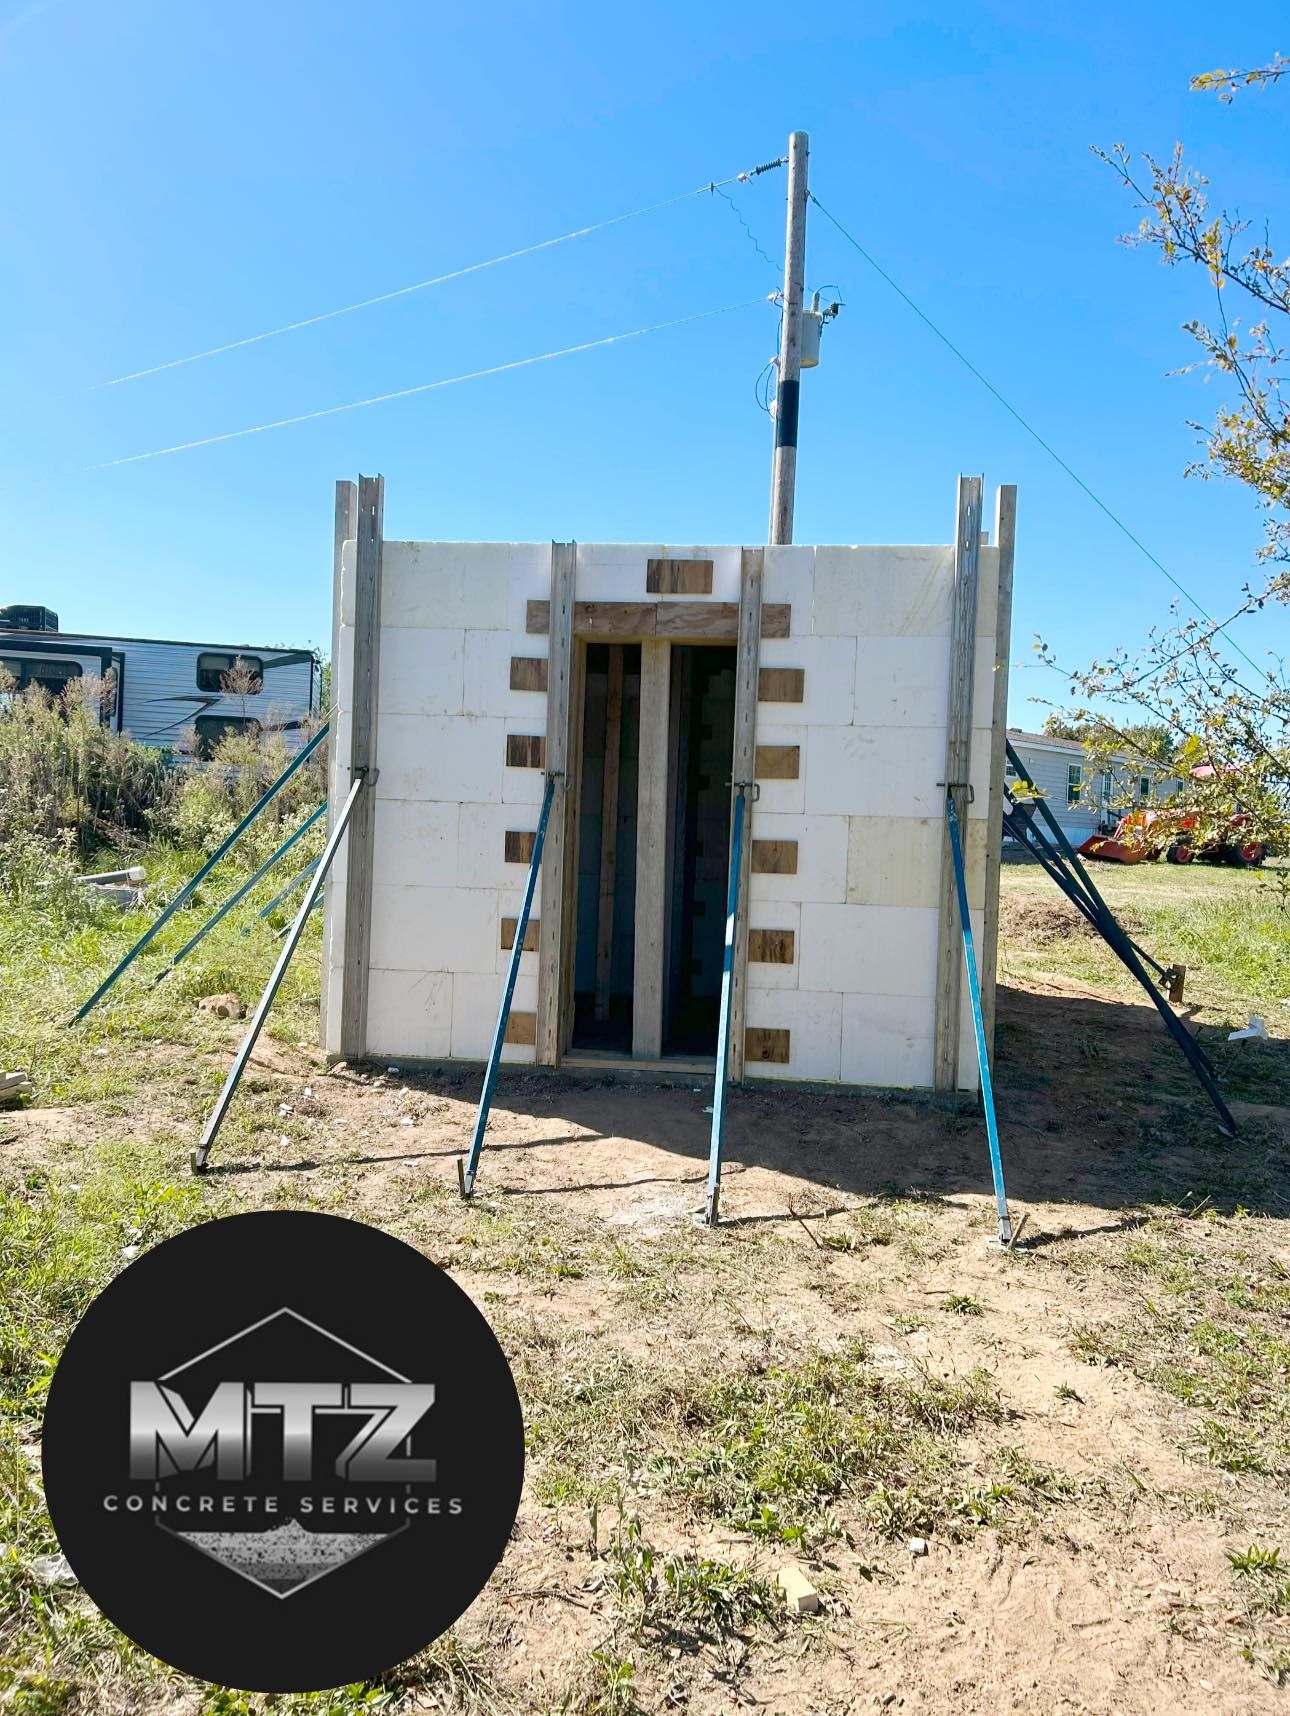  for MTZ Concrete Services in Tulsa, OK